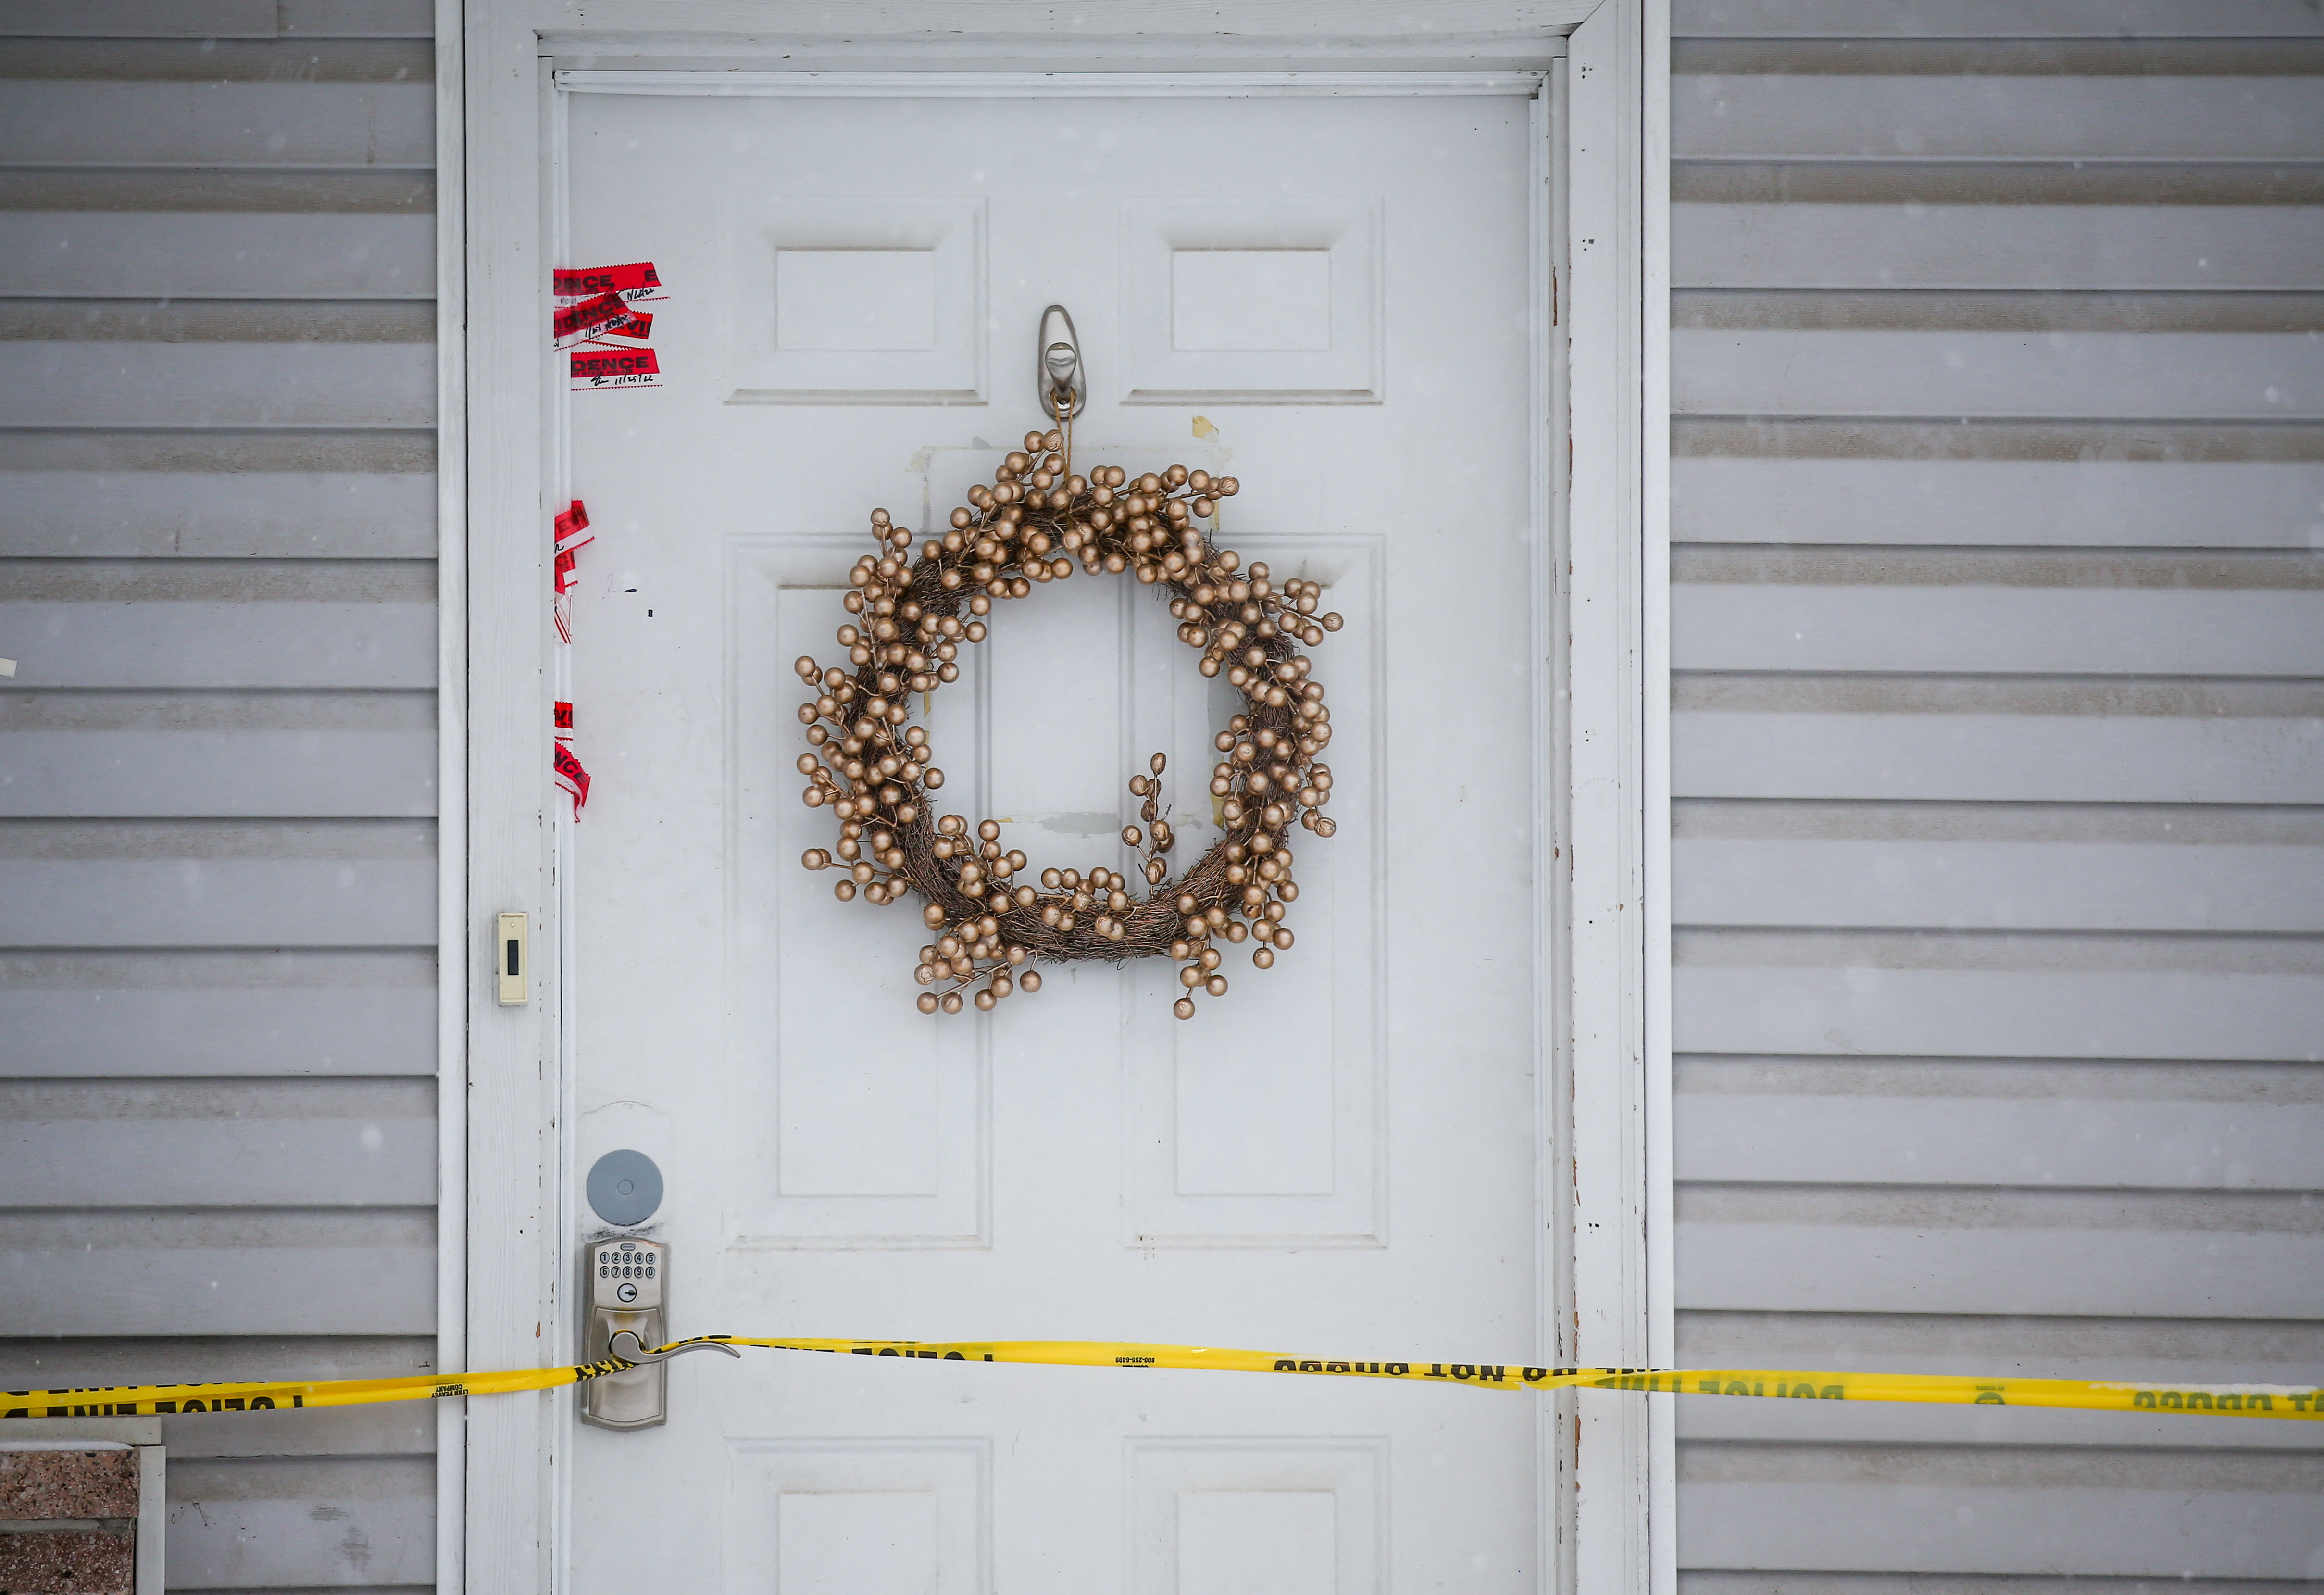 En la casa había decorado navideño y en un cartel decía Buenas Vibras ( REUTERS/Lindsey Wasson)